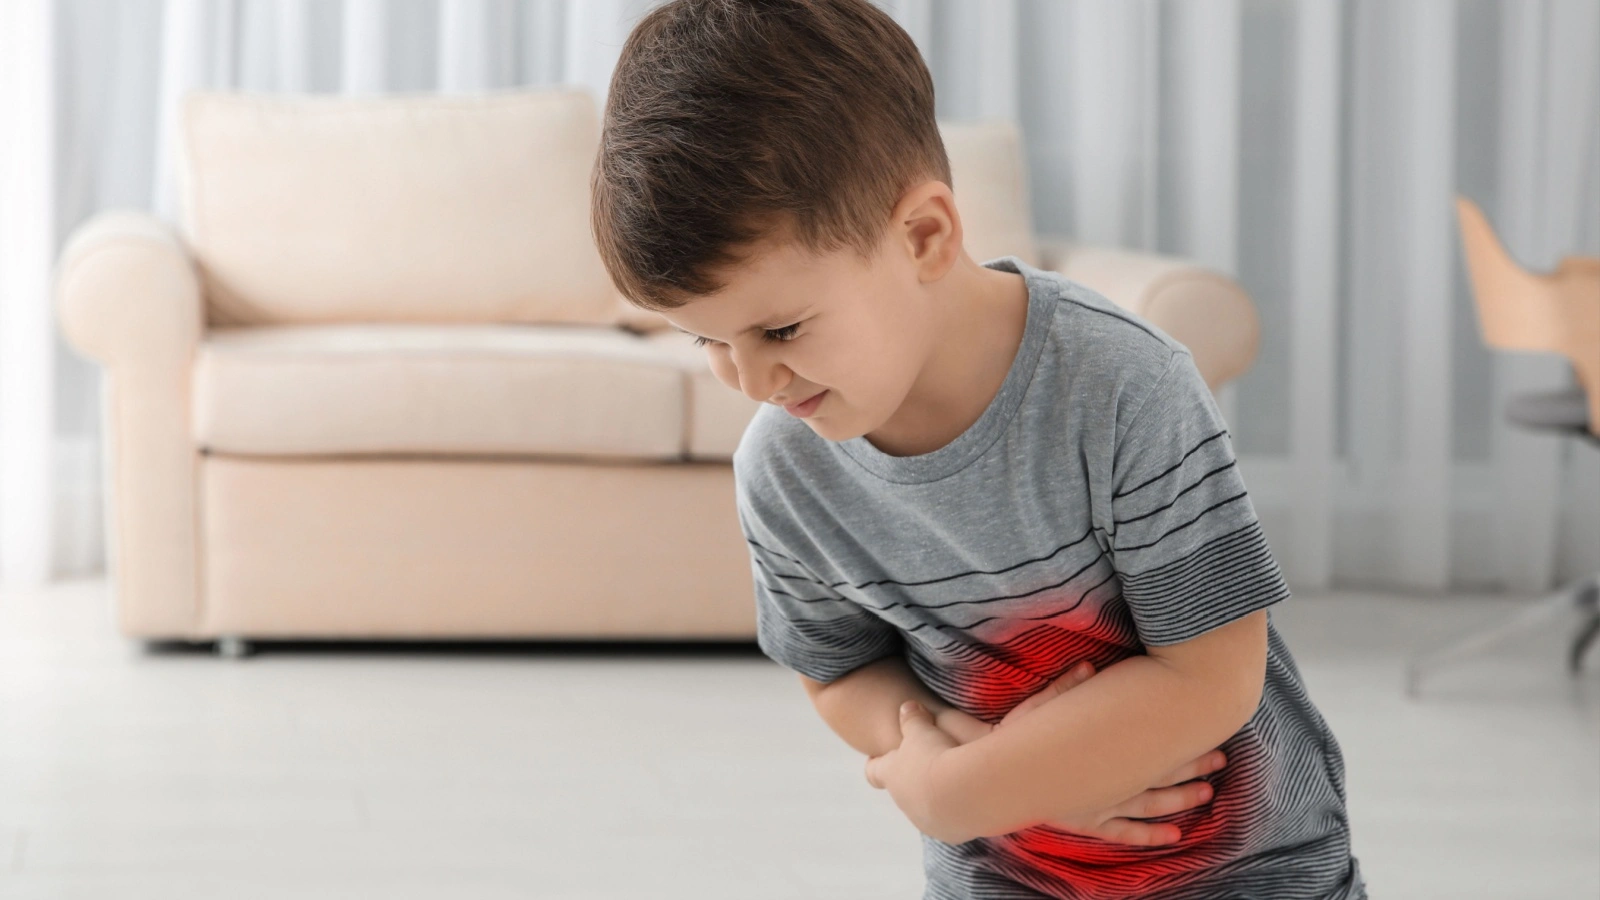 ما هي أسباب النزلات المعوية عند الأطفال وما هي طرق انتقال العدوى بها؟